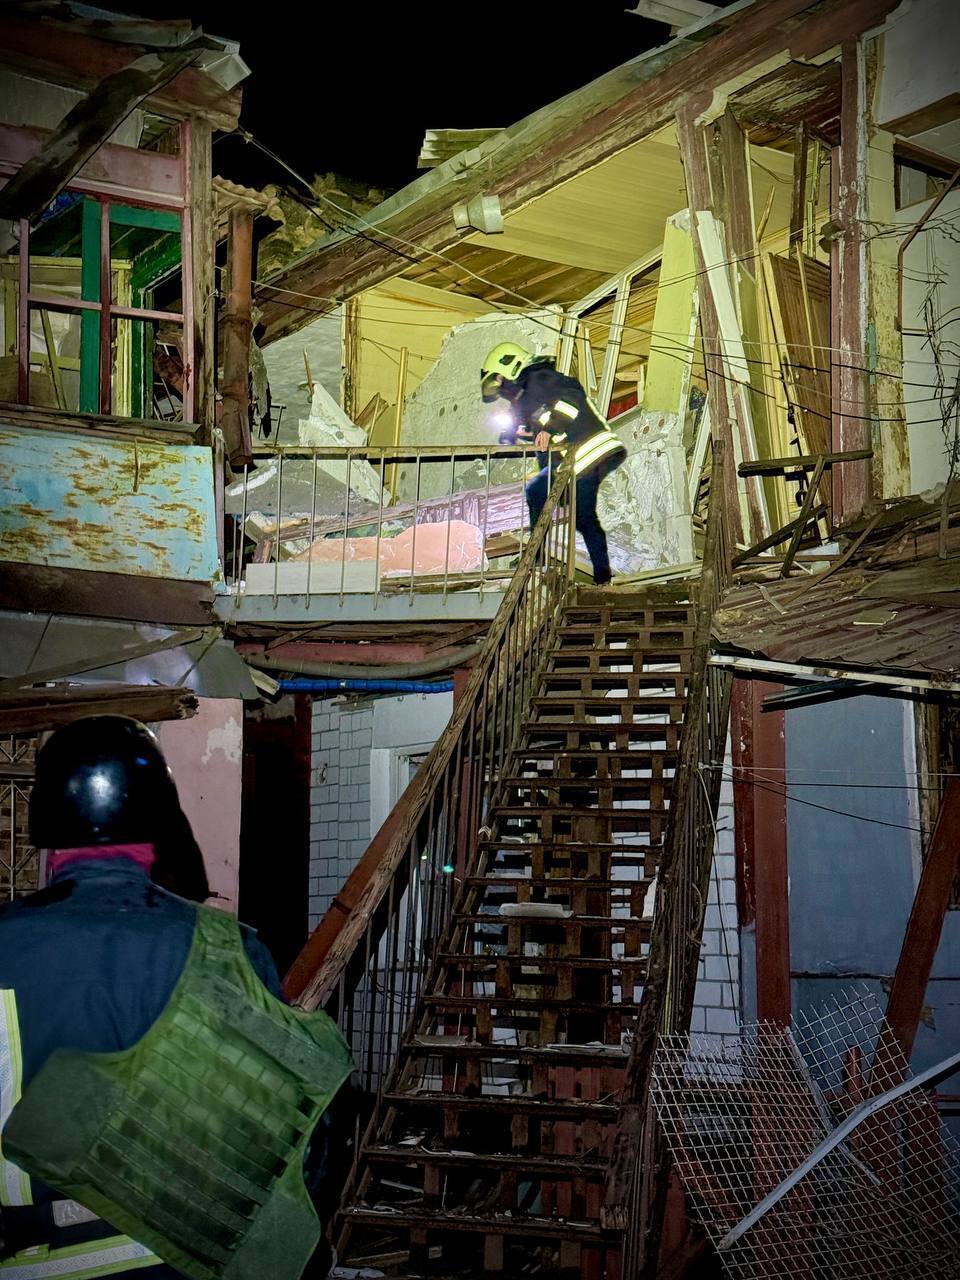 Окупанти атакували Одесу "Шахедами": пошкоджено будинки, постраждали дев’ятеро людей. Фото й відео